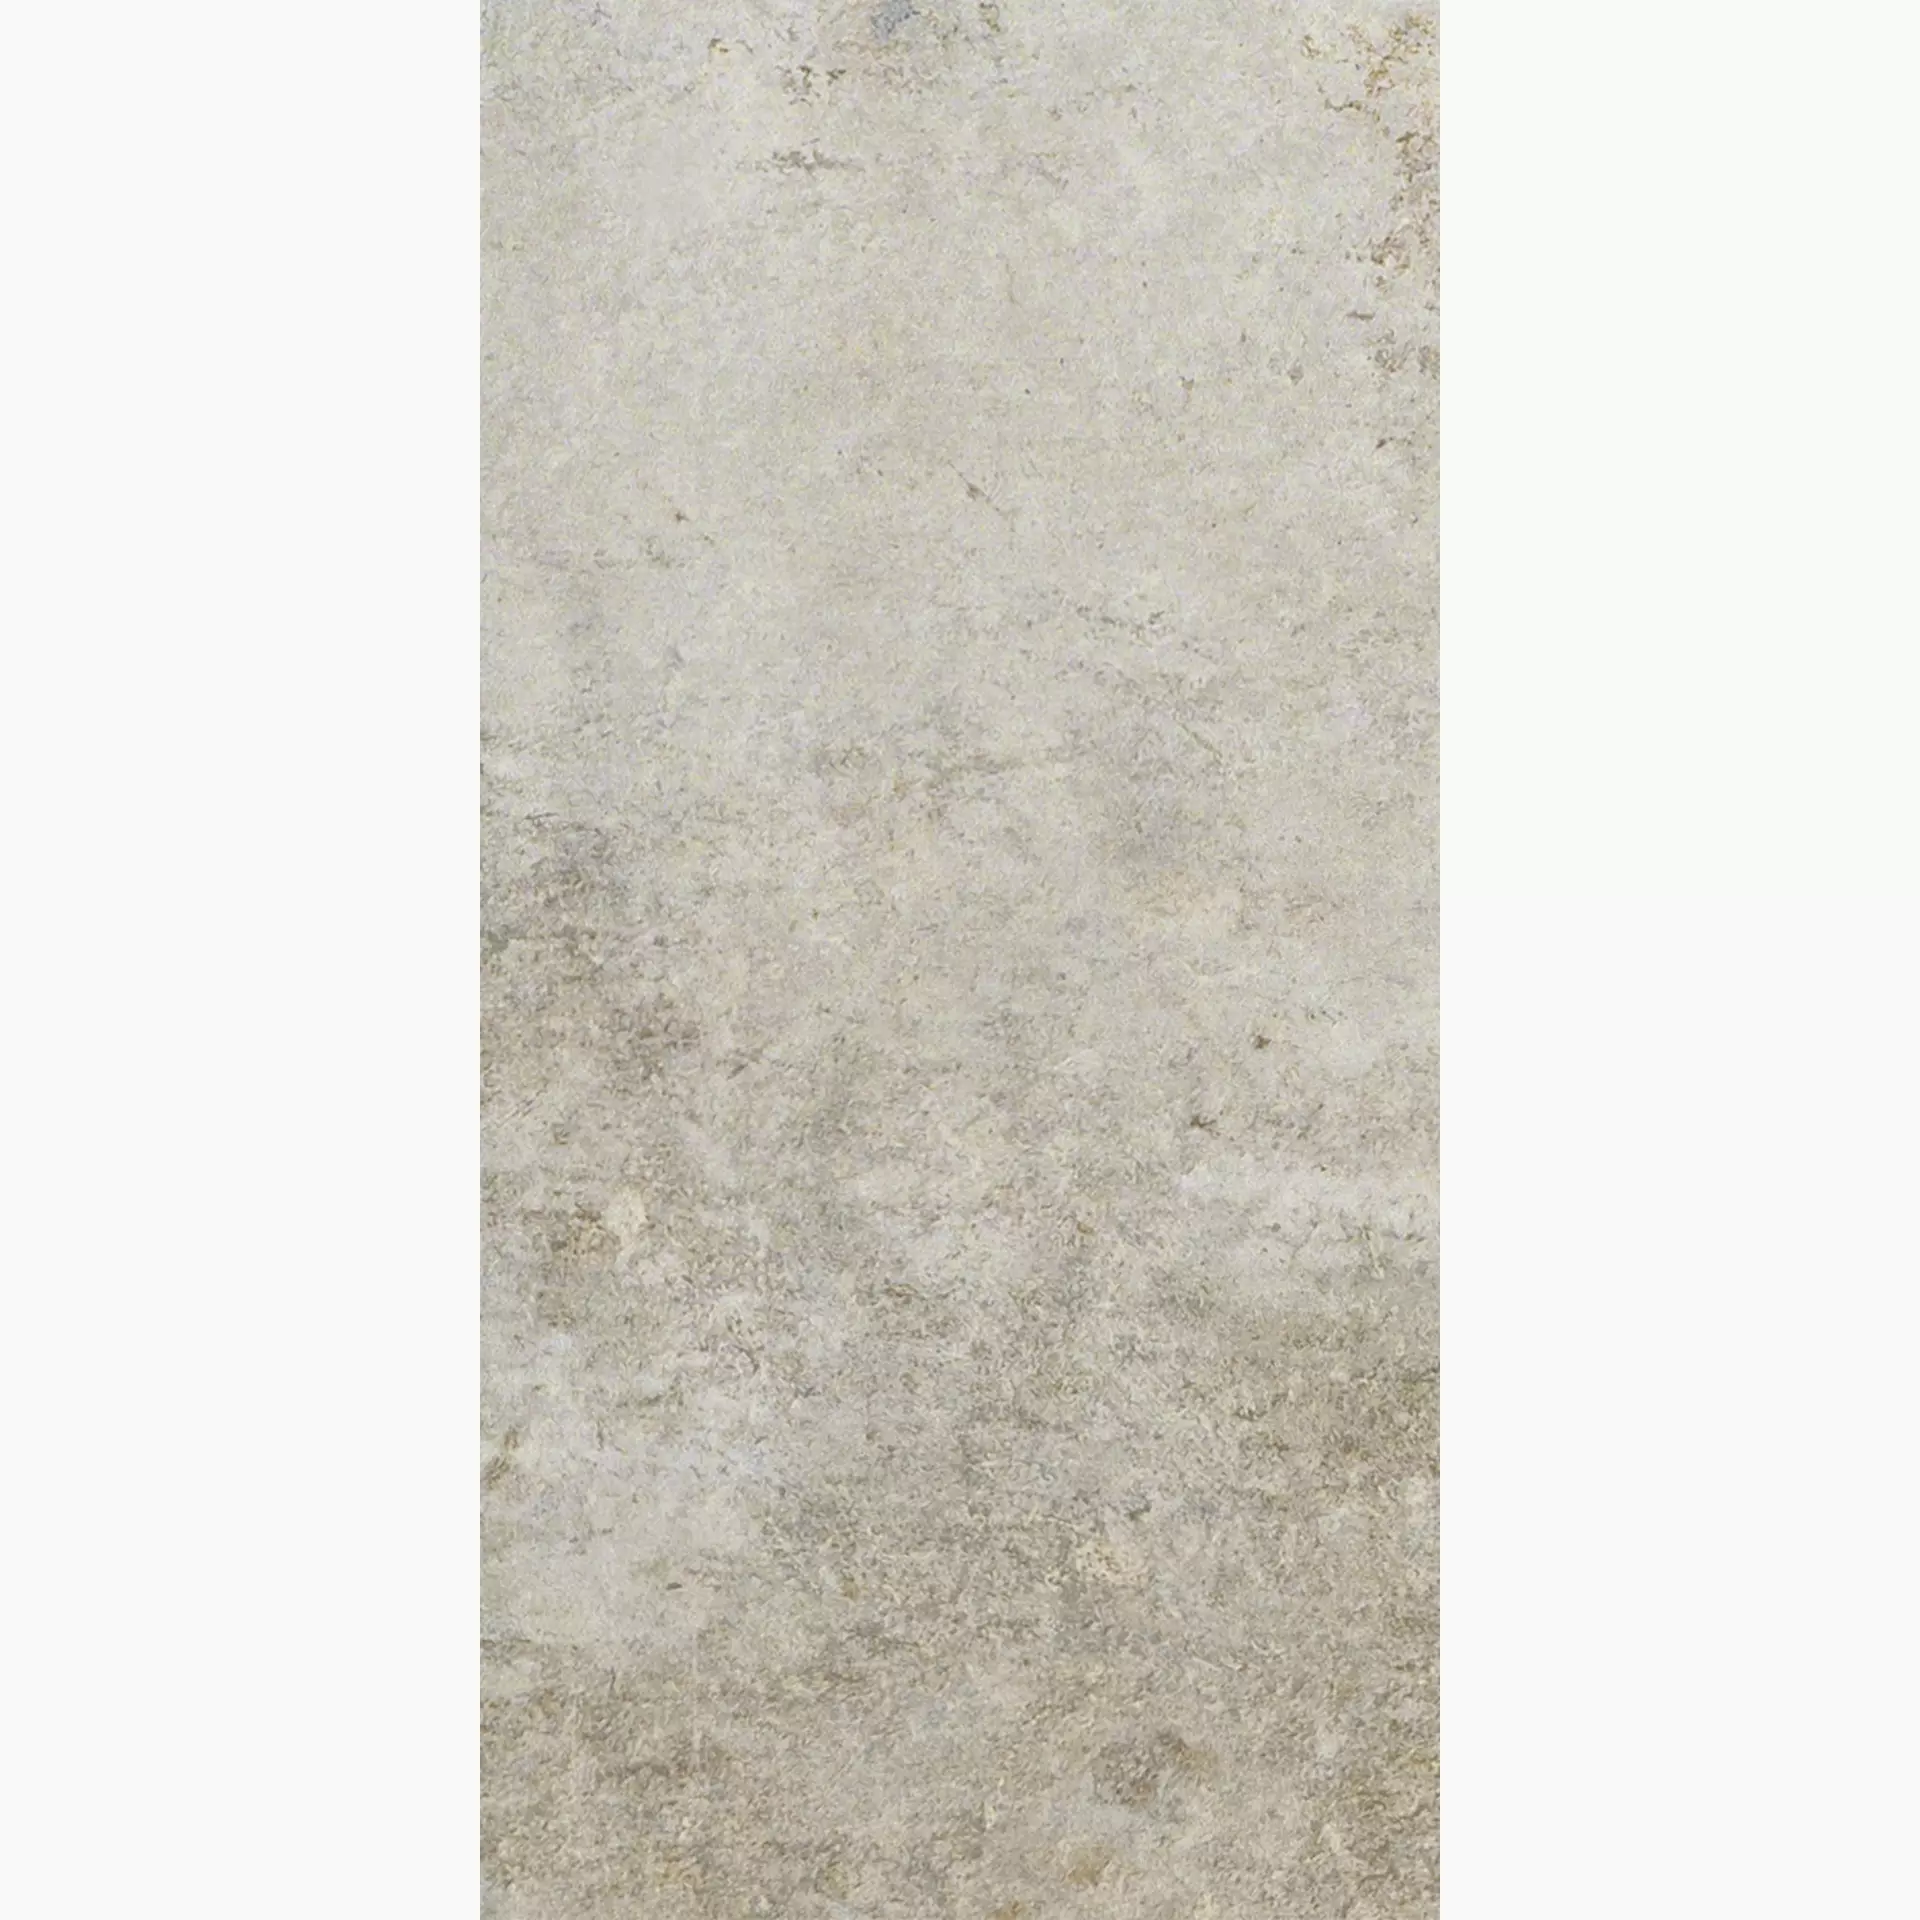 Florim Artifact Of Cerim Worn Sand Naturale – Matt Worn Sand 760628 matt natur 30x60cm rektifiziert 9mm